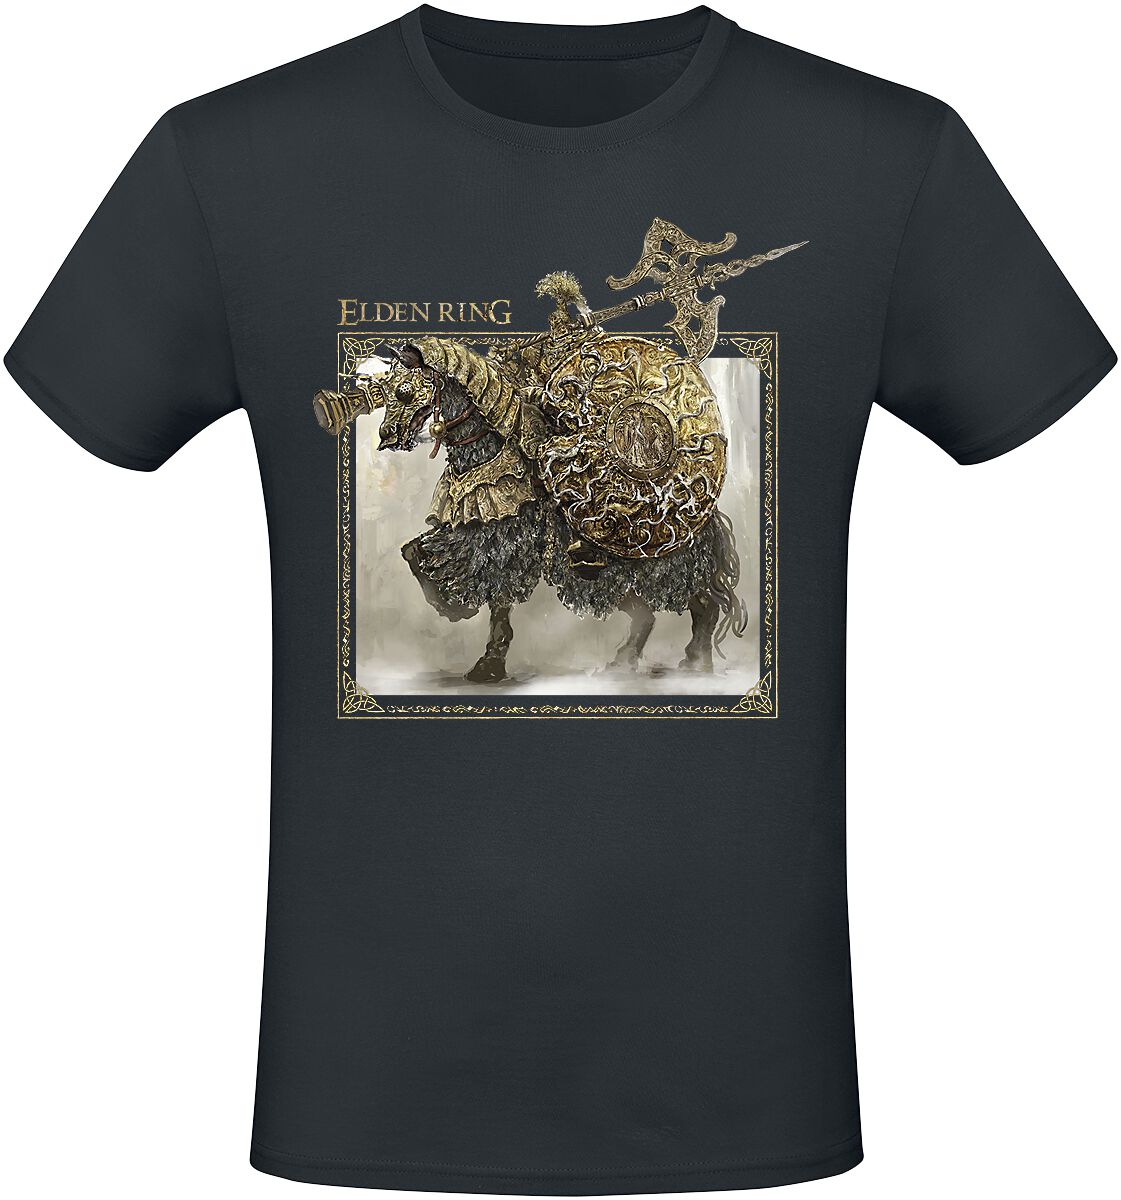 Elden Ring - Gaming T-Shirt - Tree Sentinel - S bis XXL - für Männer - Größe S - schwarz  - EMP exklusives Merchandise!